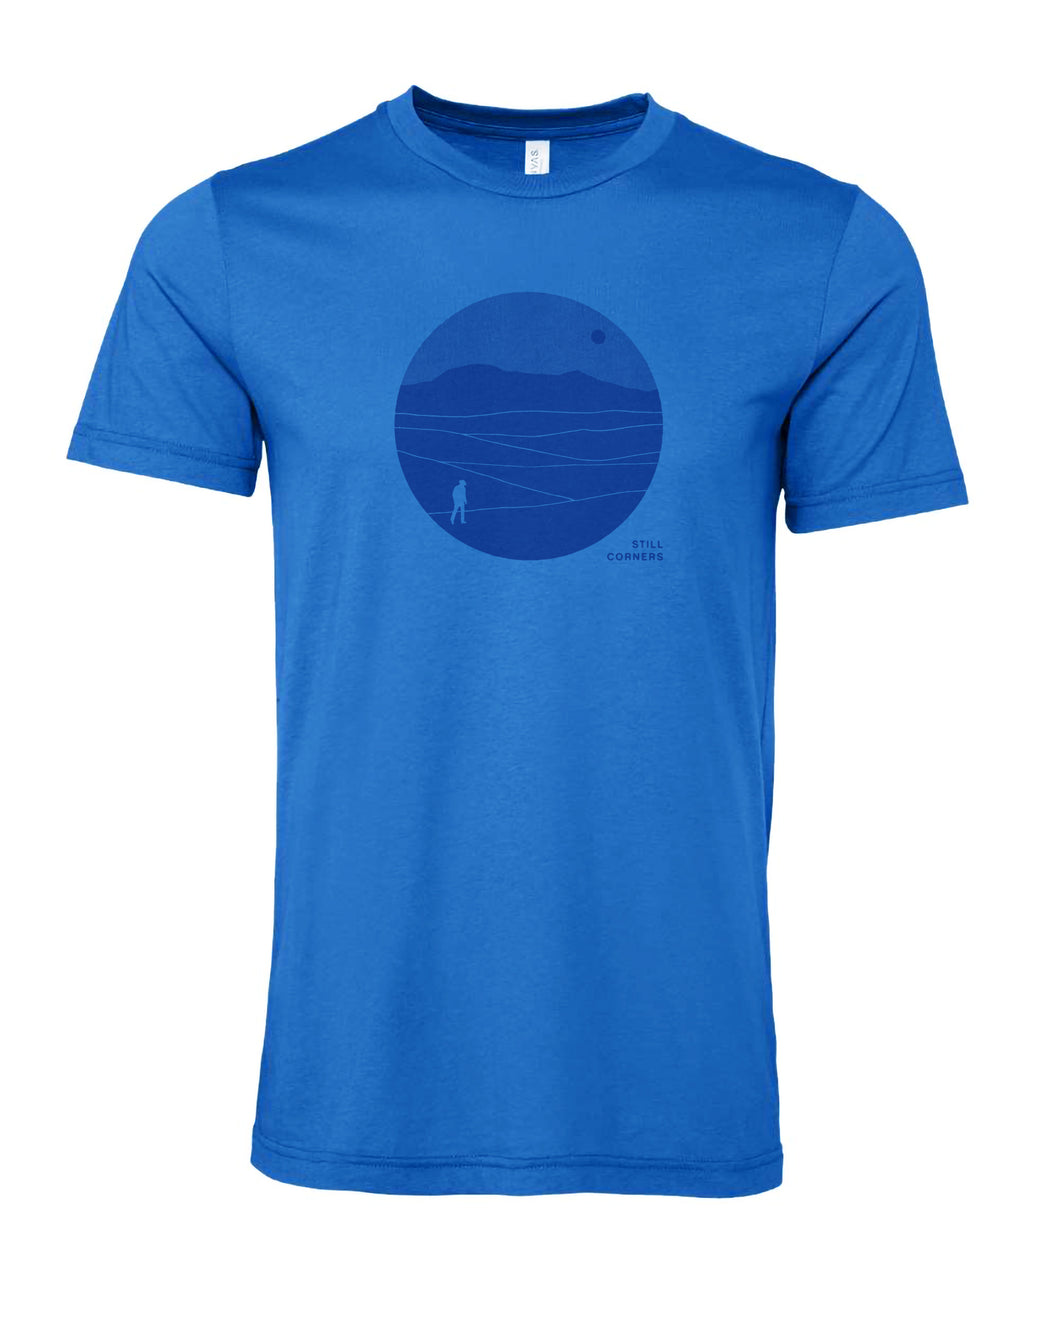 The Last Exit Blue Solo Traveller T-shirt